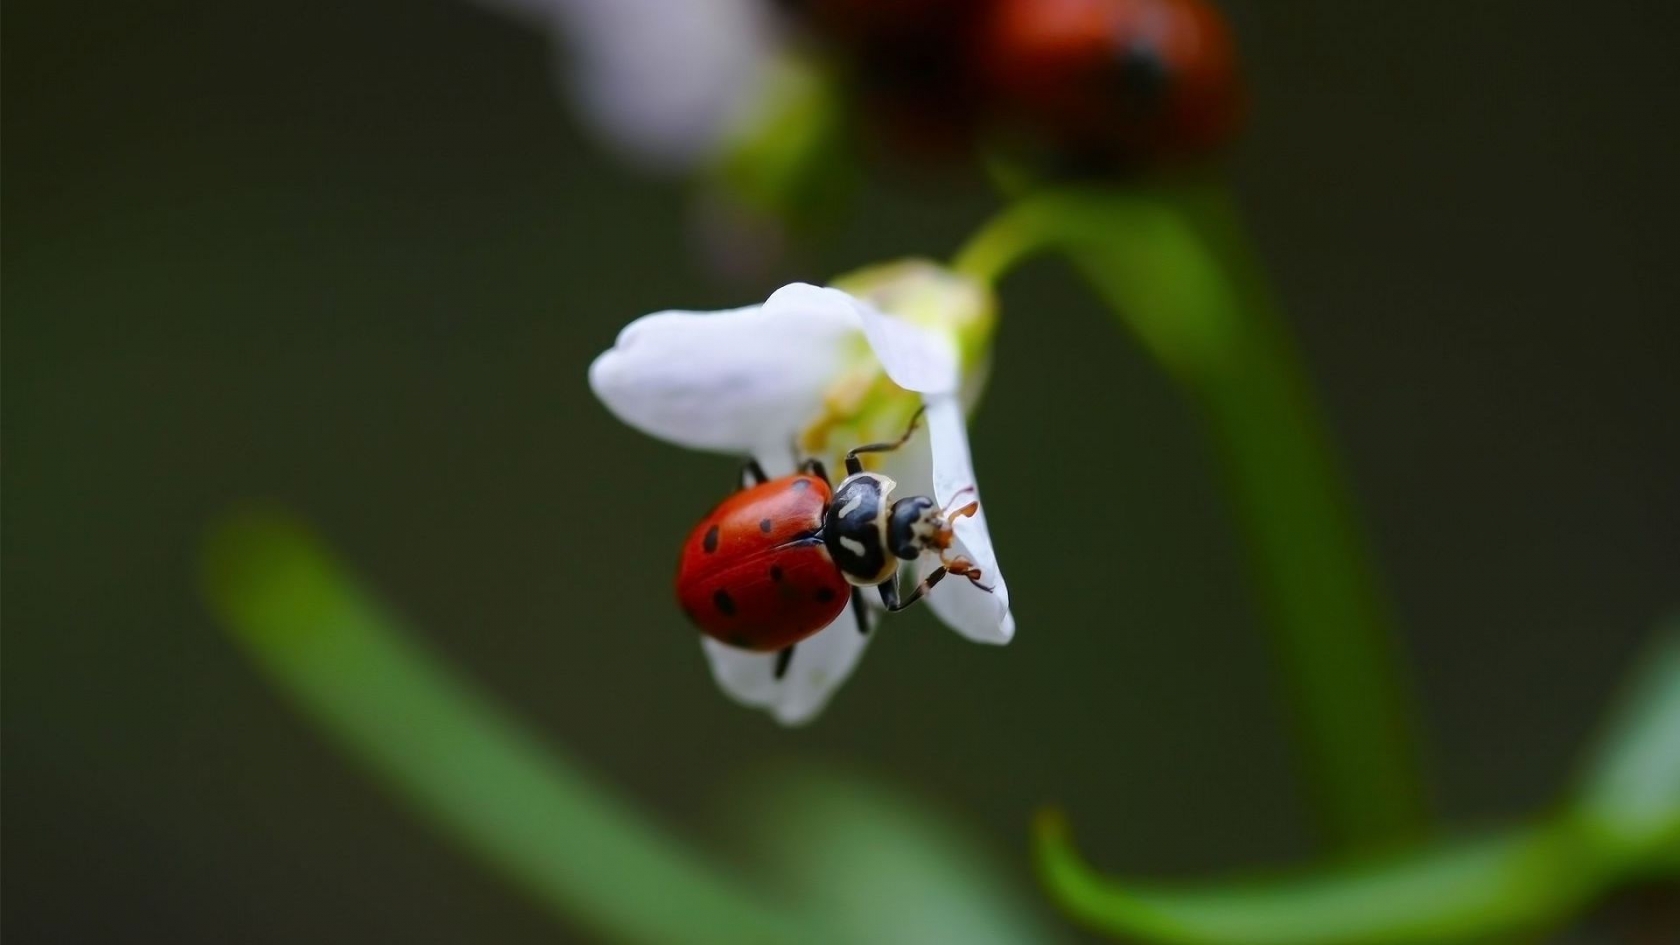 Ladybug on White Flower for 1680 x 945 HDTV resolution